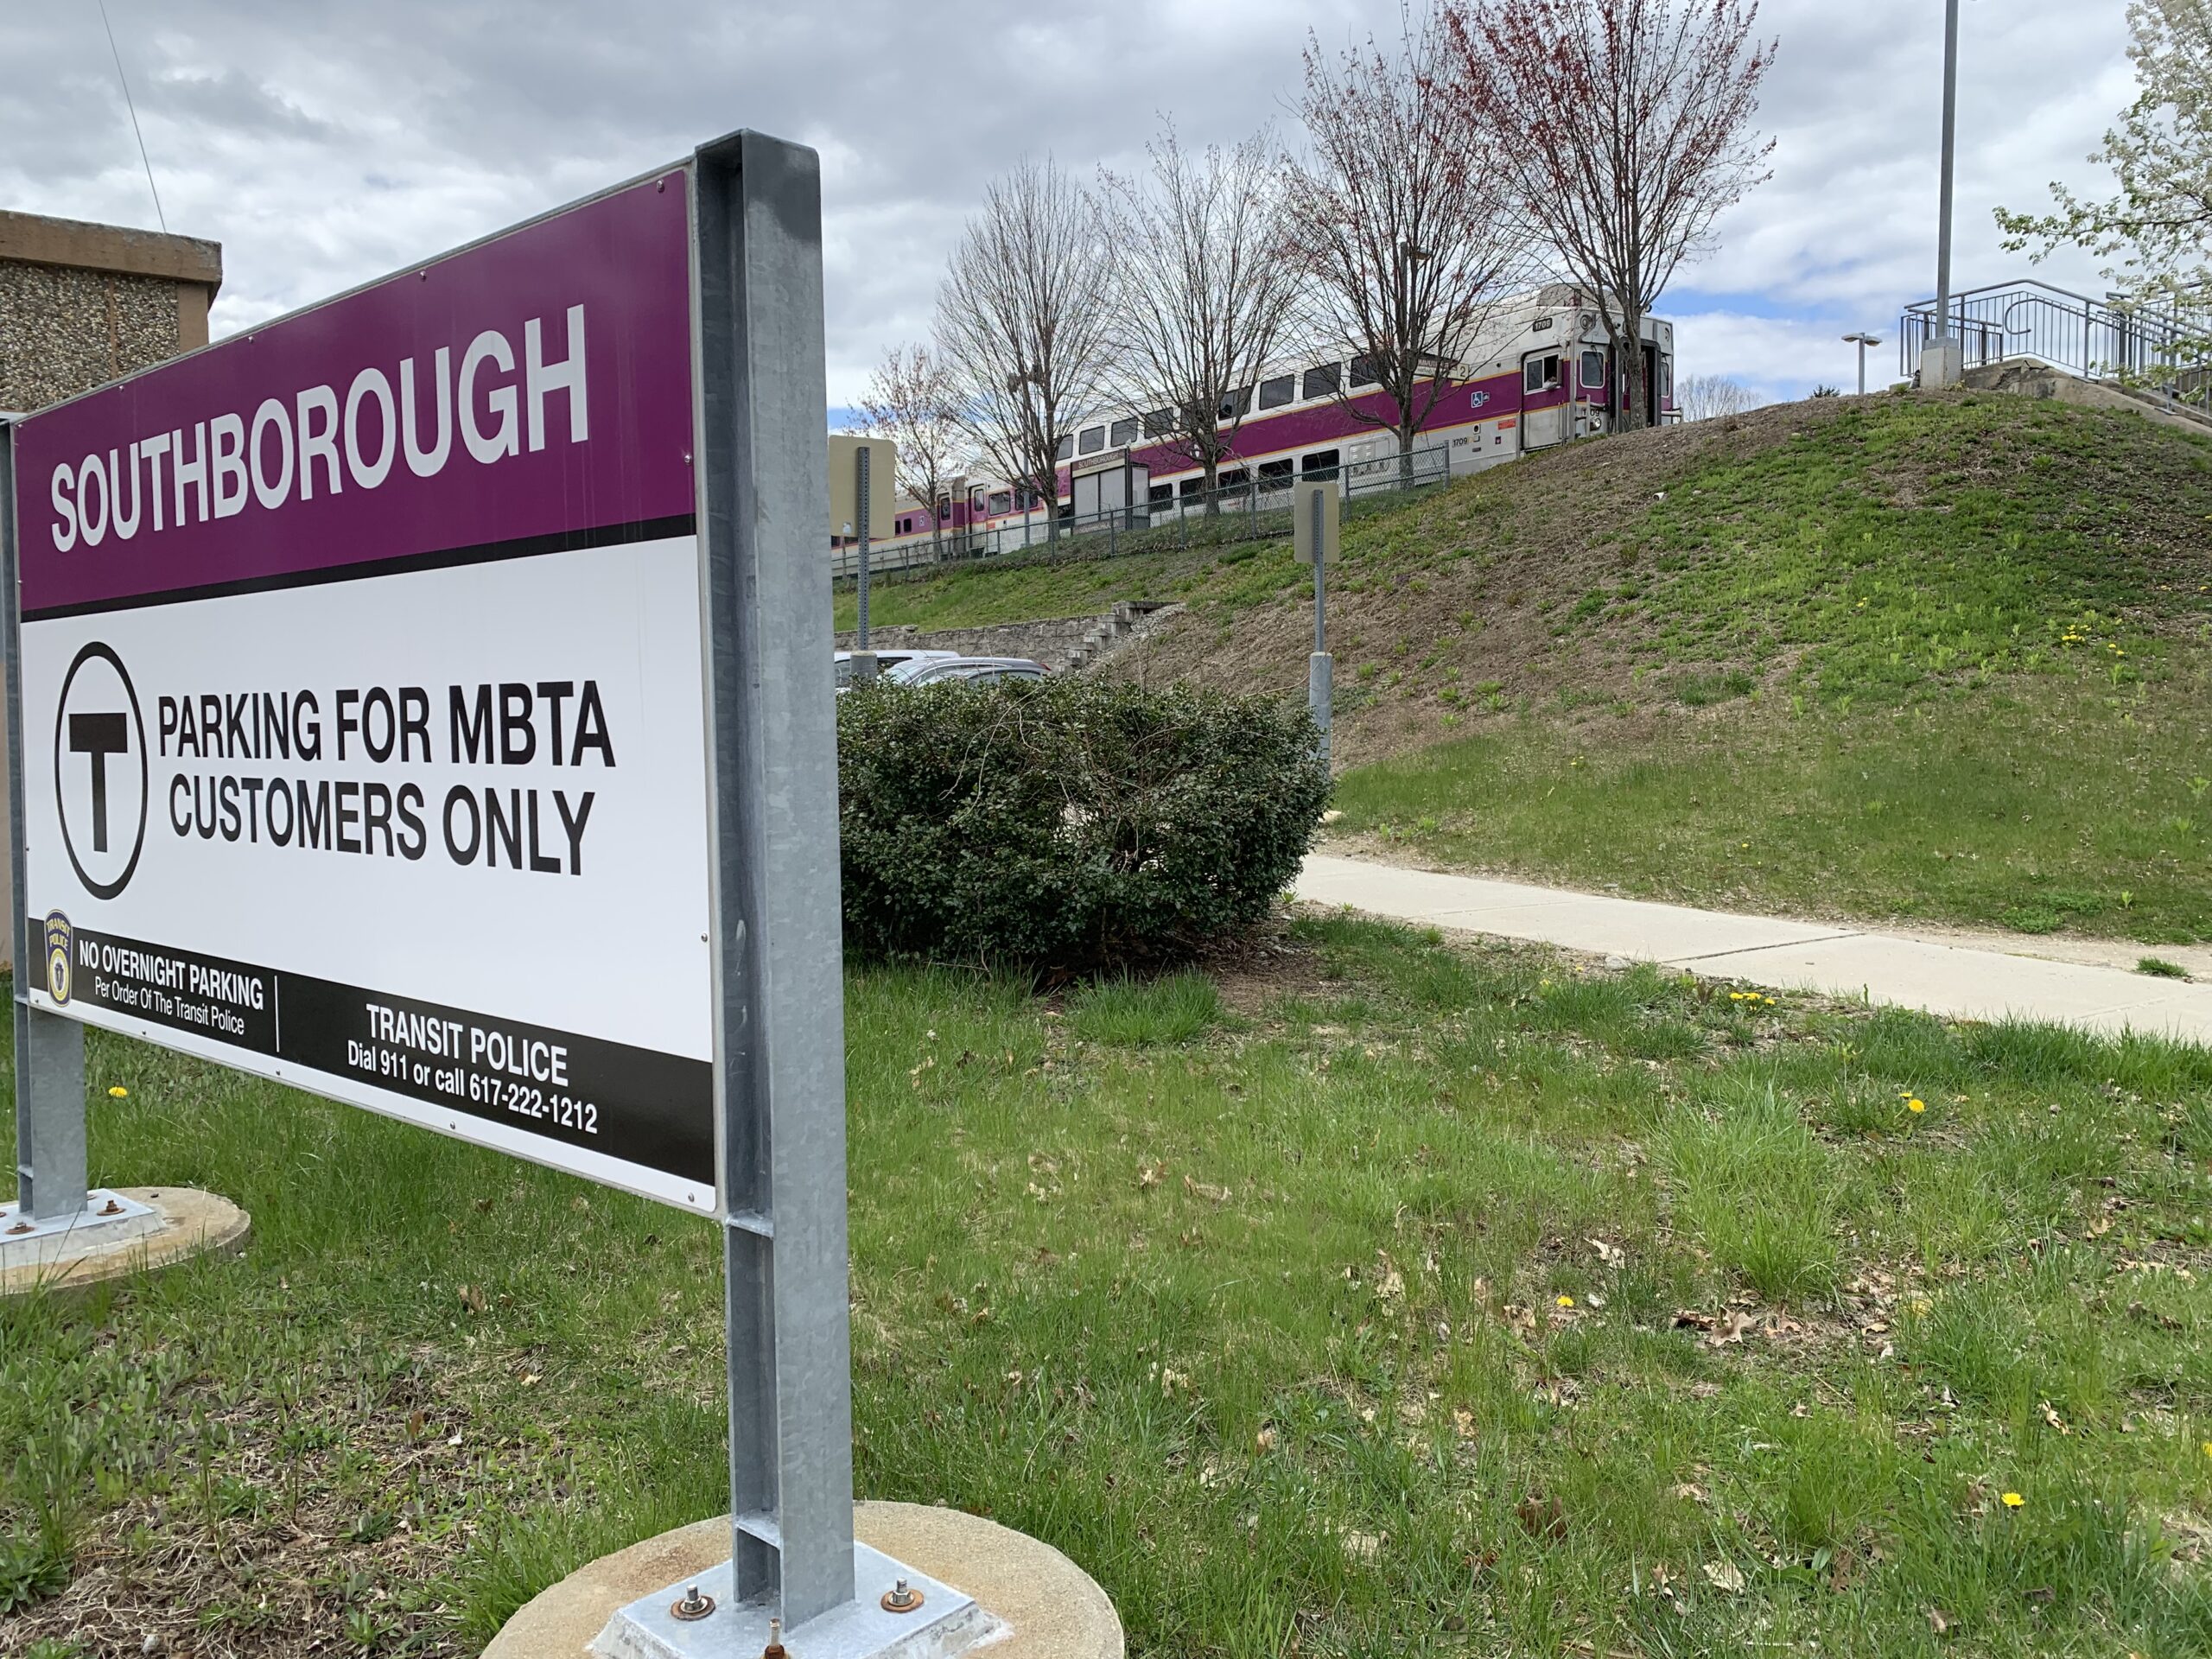 ZAC tackles ways to meet MBTA Communities zoning requirements